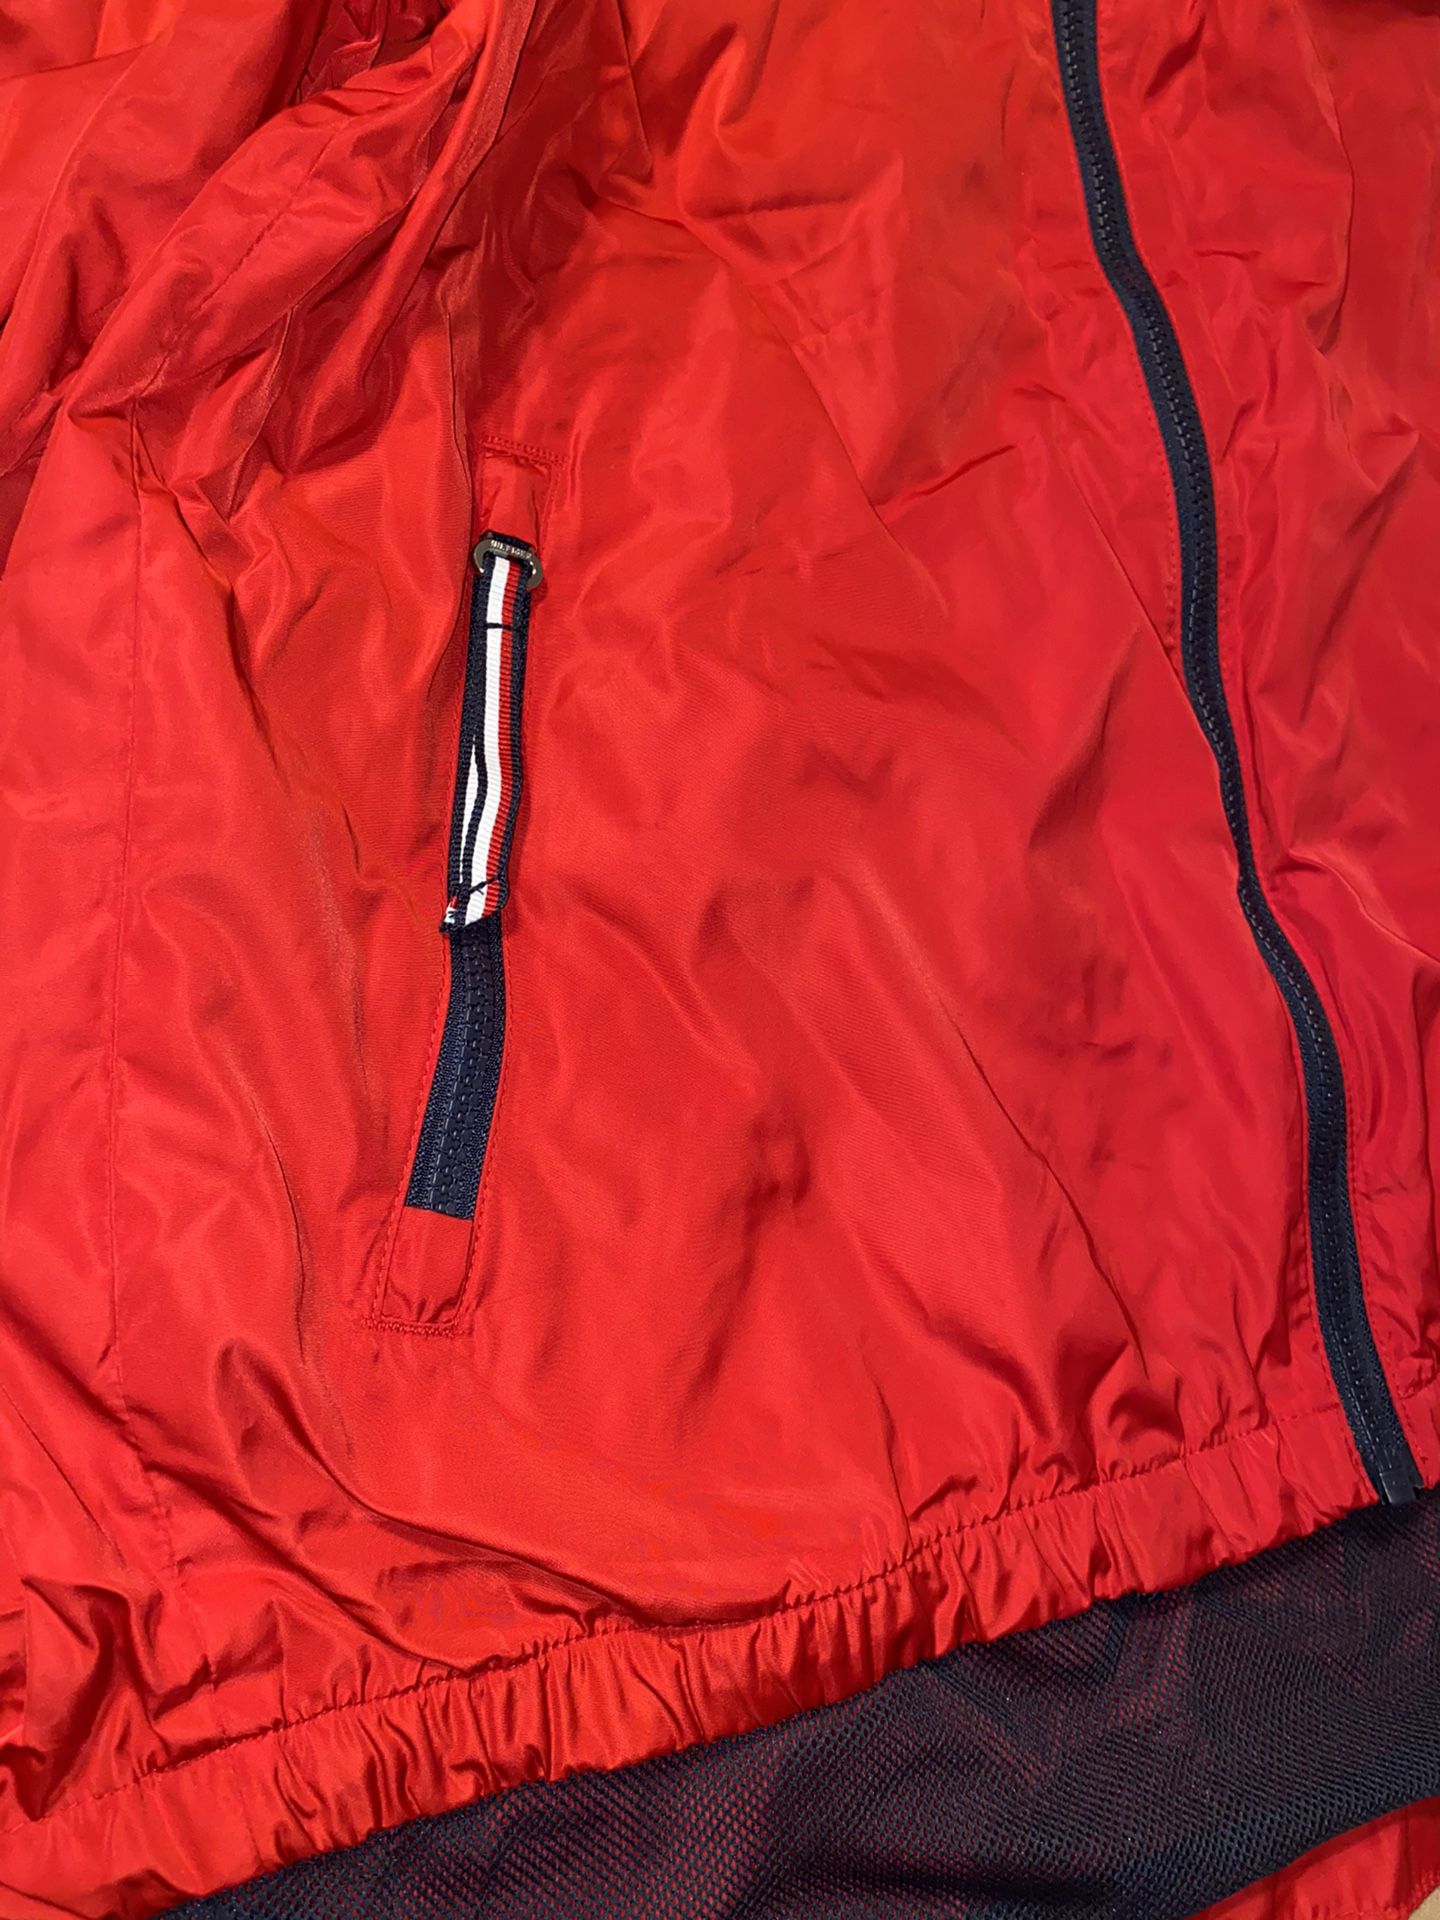 Tommy Hilfiger Ladies' Windbreaker Hoodie Jacket, Red, Large - NEW